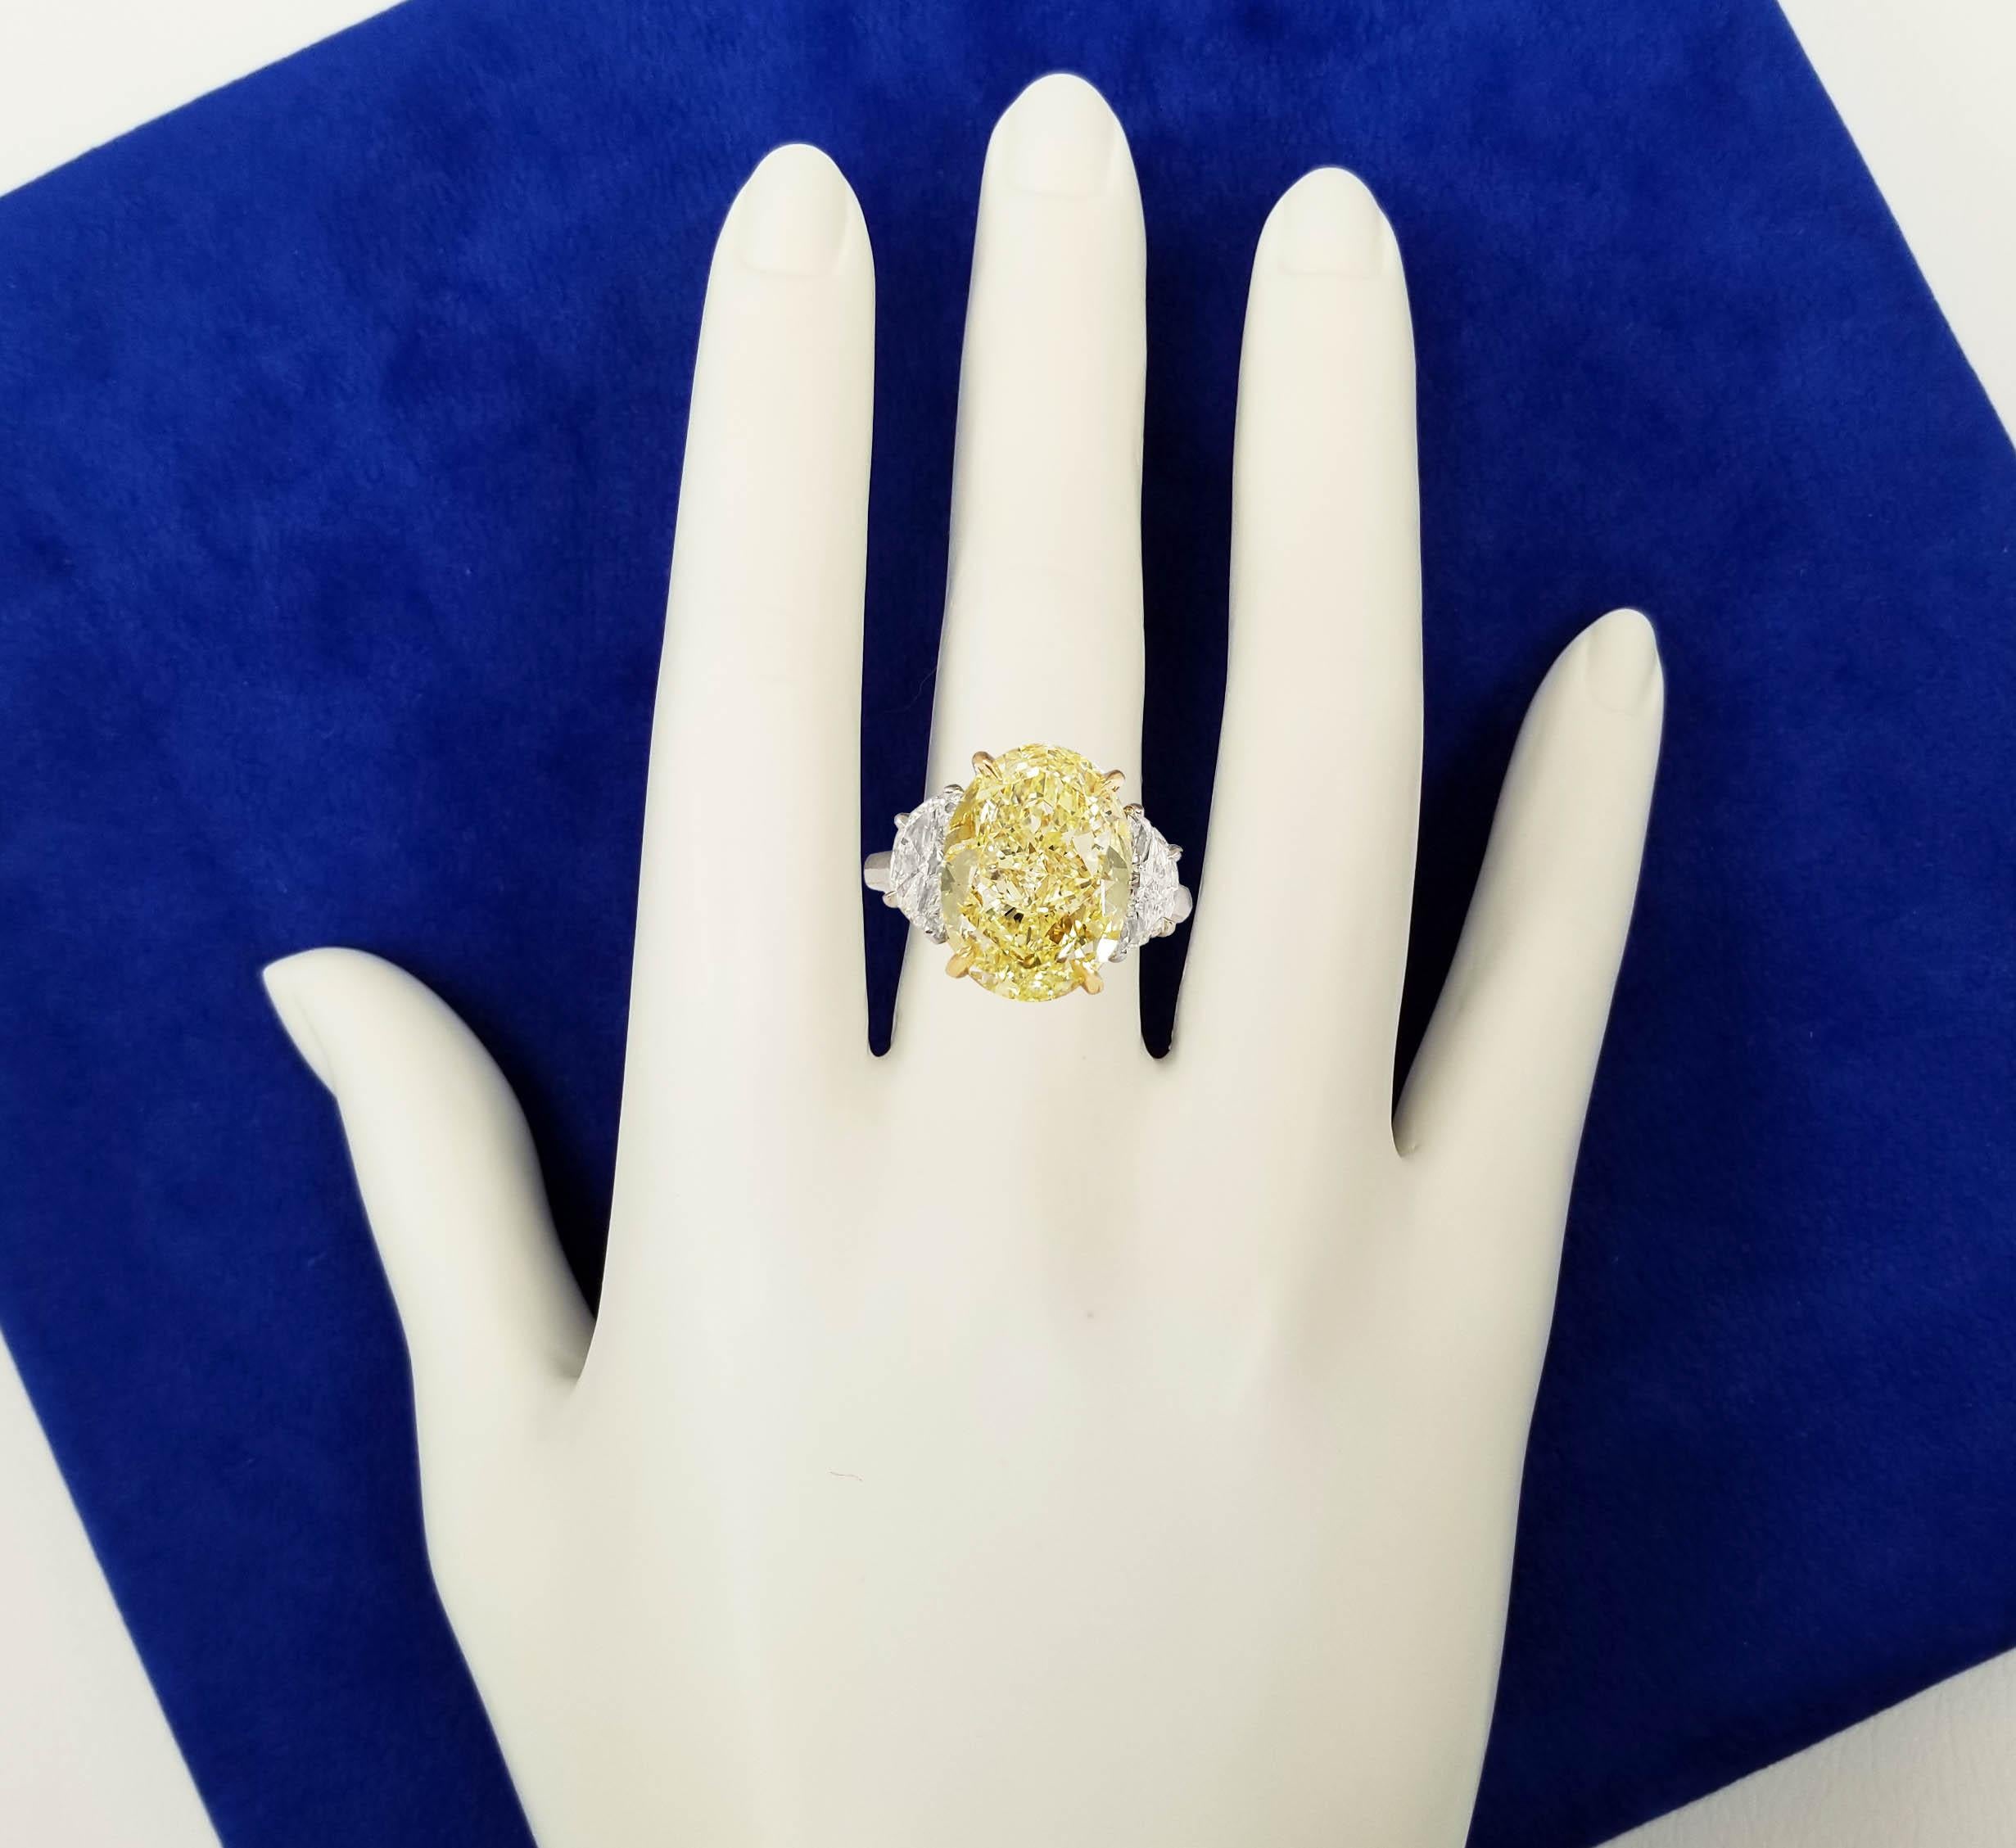 12 carat oval diamond ring